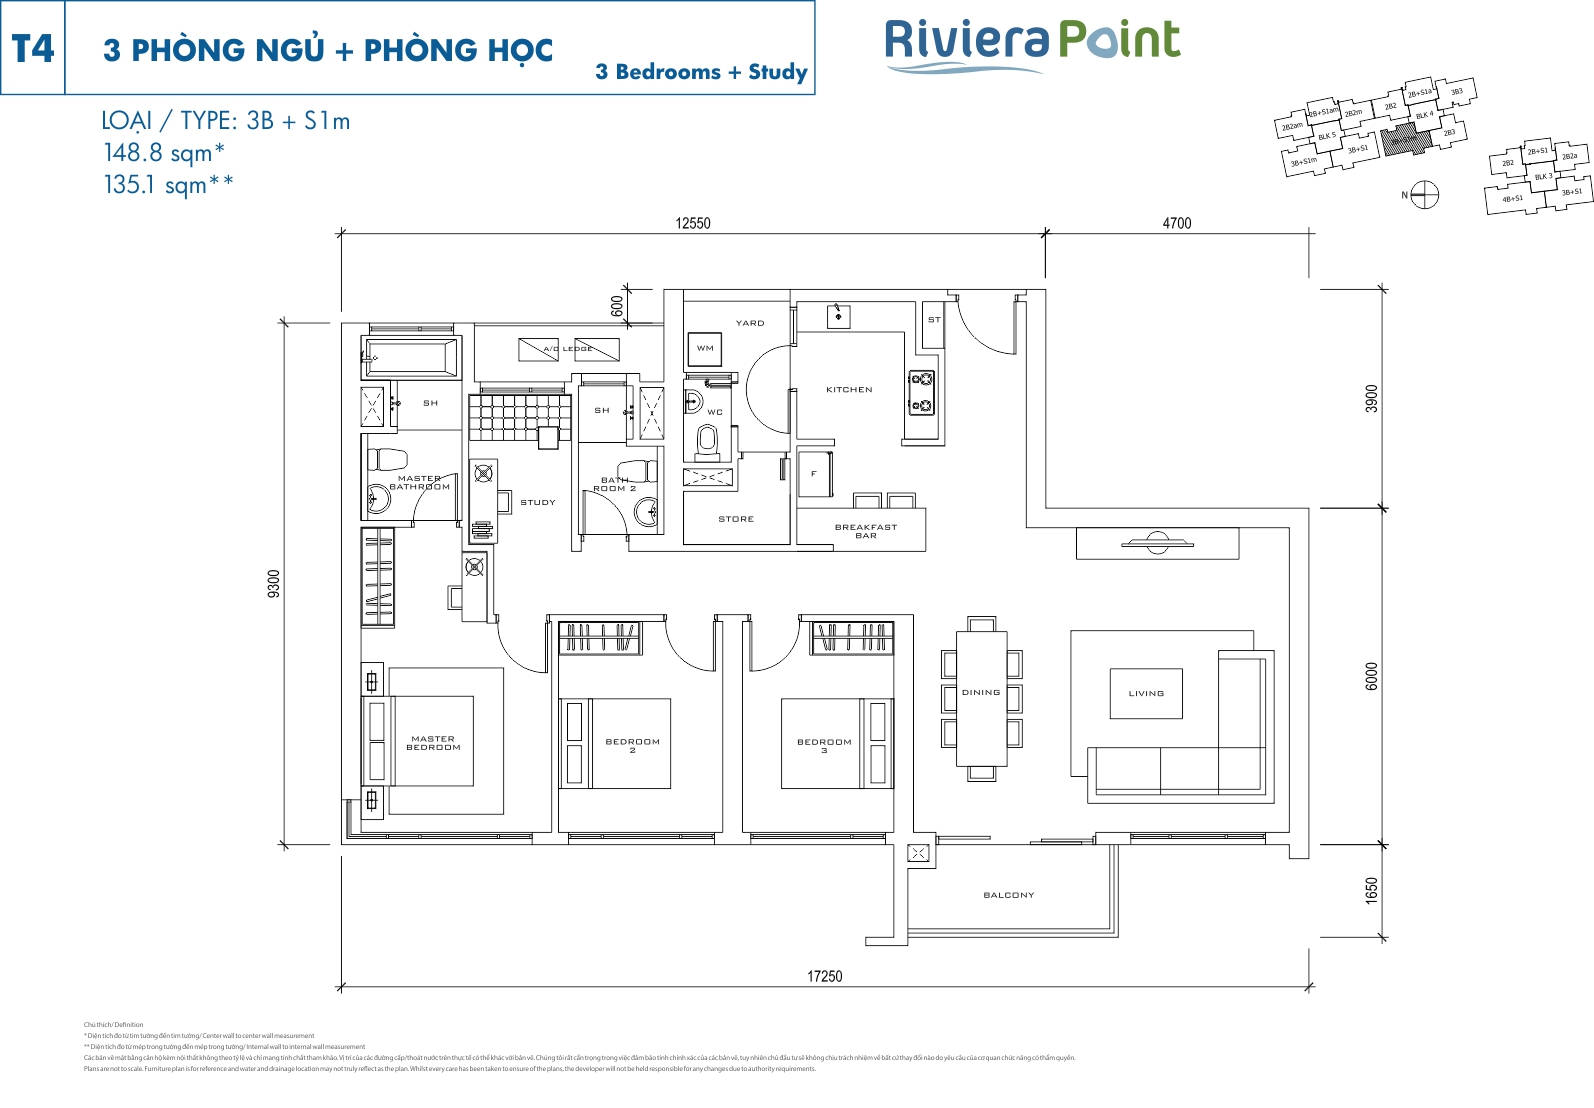 Mặt bằng căn hộ Riviera Point quận 7 layout căn 3 phòng ngủ lớn loại 148.8m2 (3PN) - T4 - 3B+S1m